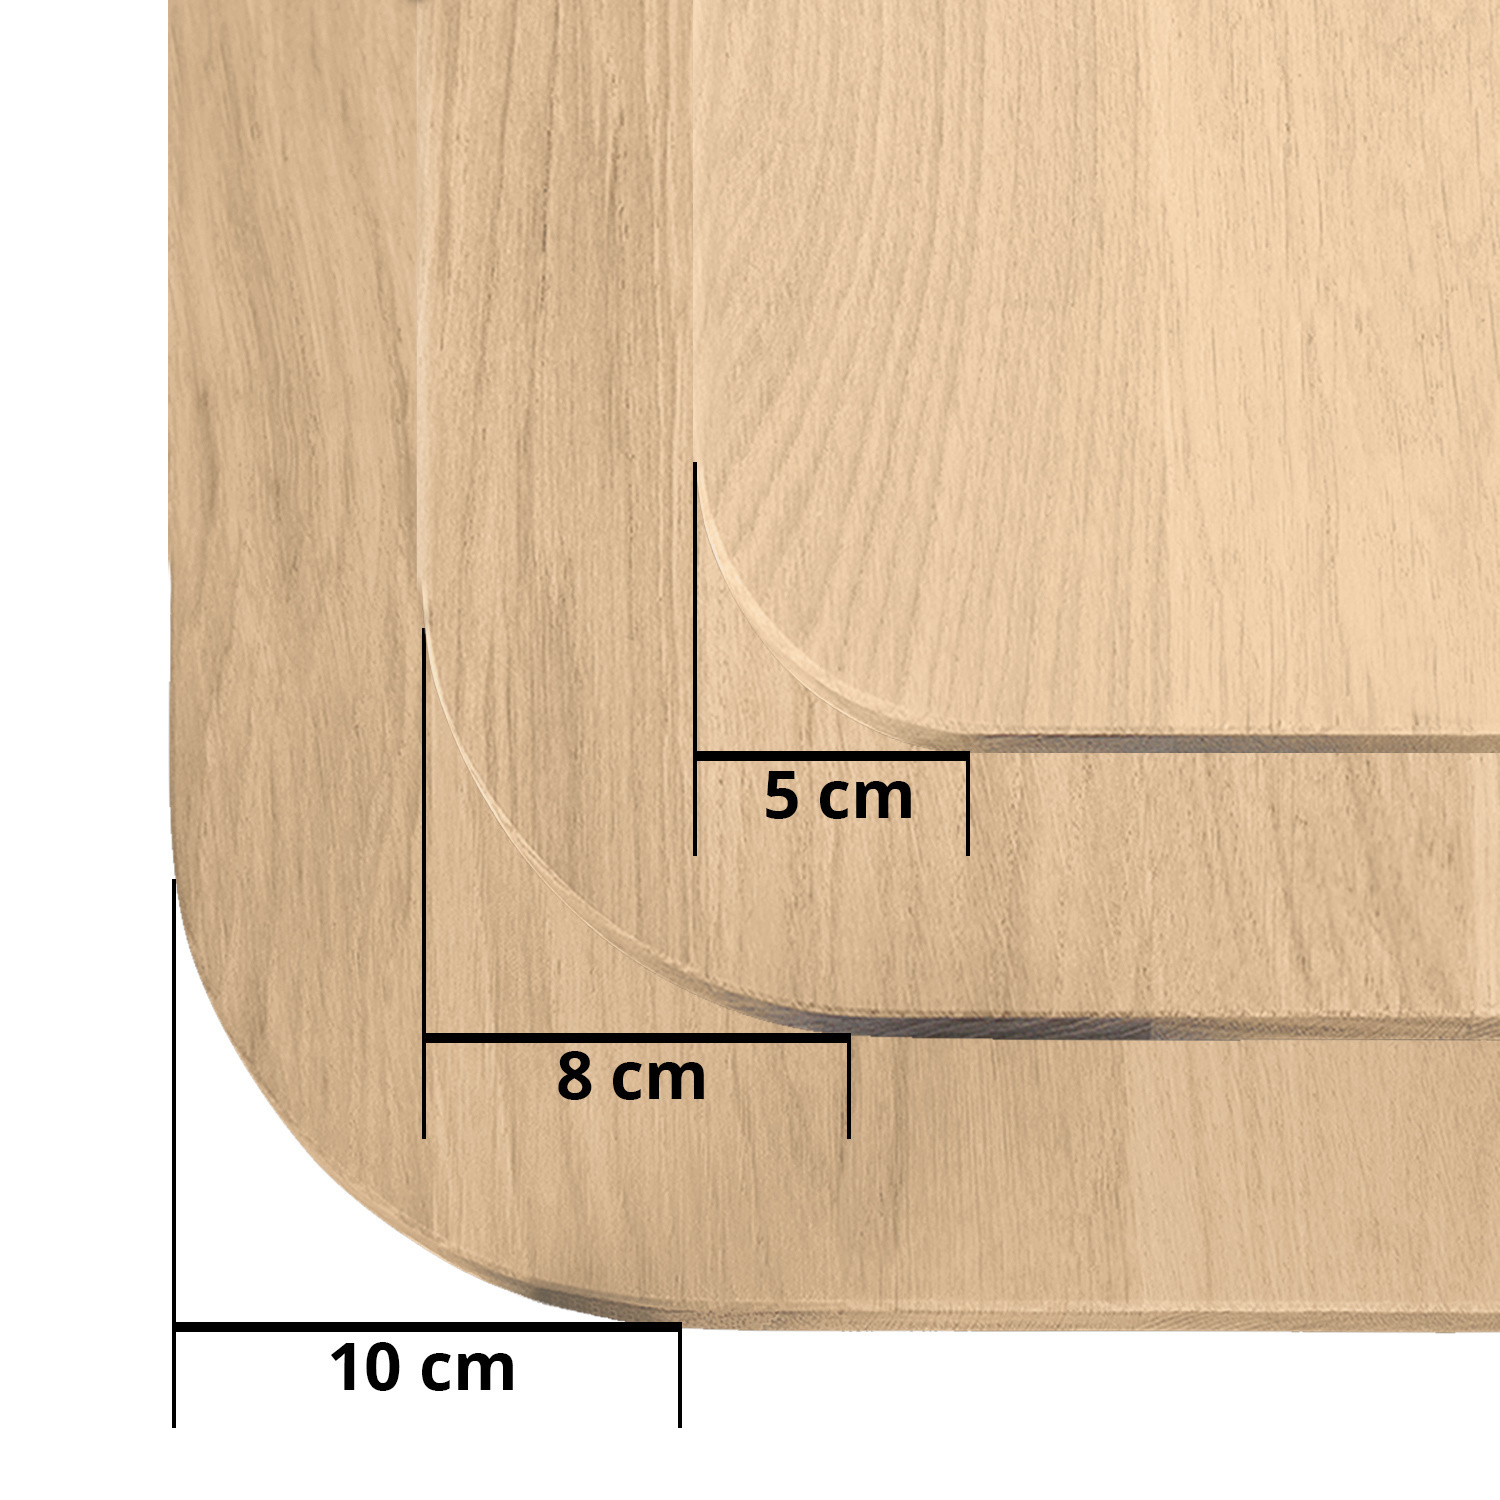  Tischplatte Wildeiche - mit runden Ecken - 3 cm dick (1-Schicht) - XXL Lamellen (14-20 cm breit) - Asteiche (rustikal) - verleimt & künstlich getrocknet (HF 8-12%) - mit abgerundeten Kanten - verschiedene Größen